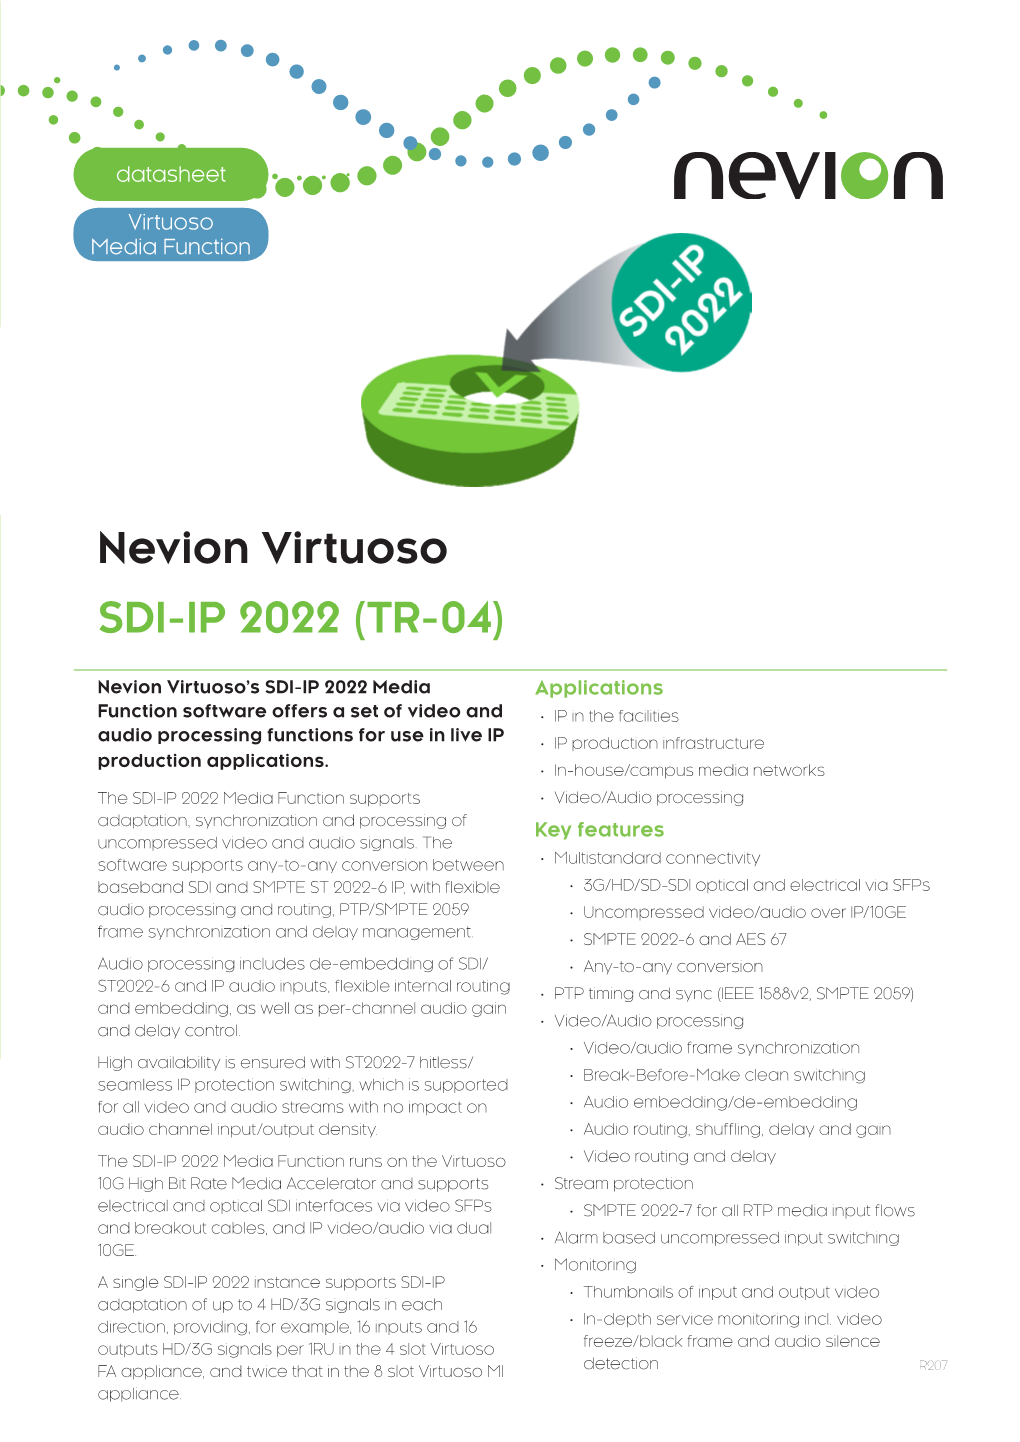 Nevion Virtuoso SDI-IP 2022 (TR-04)